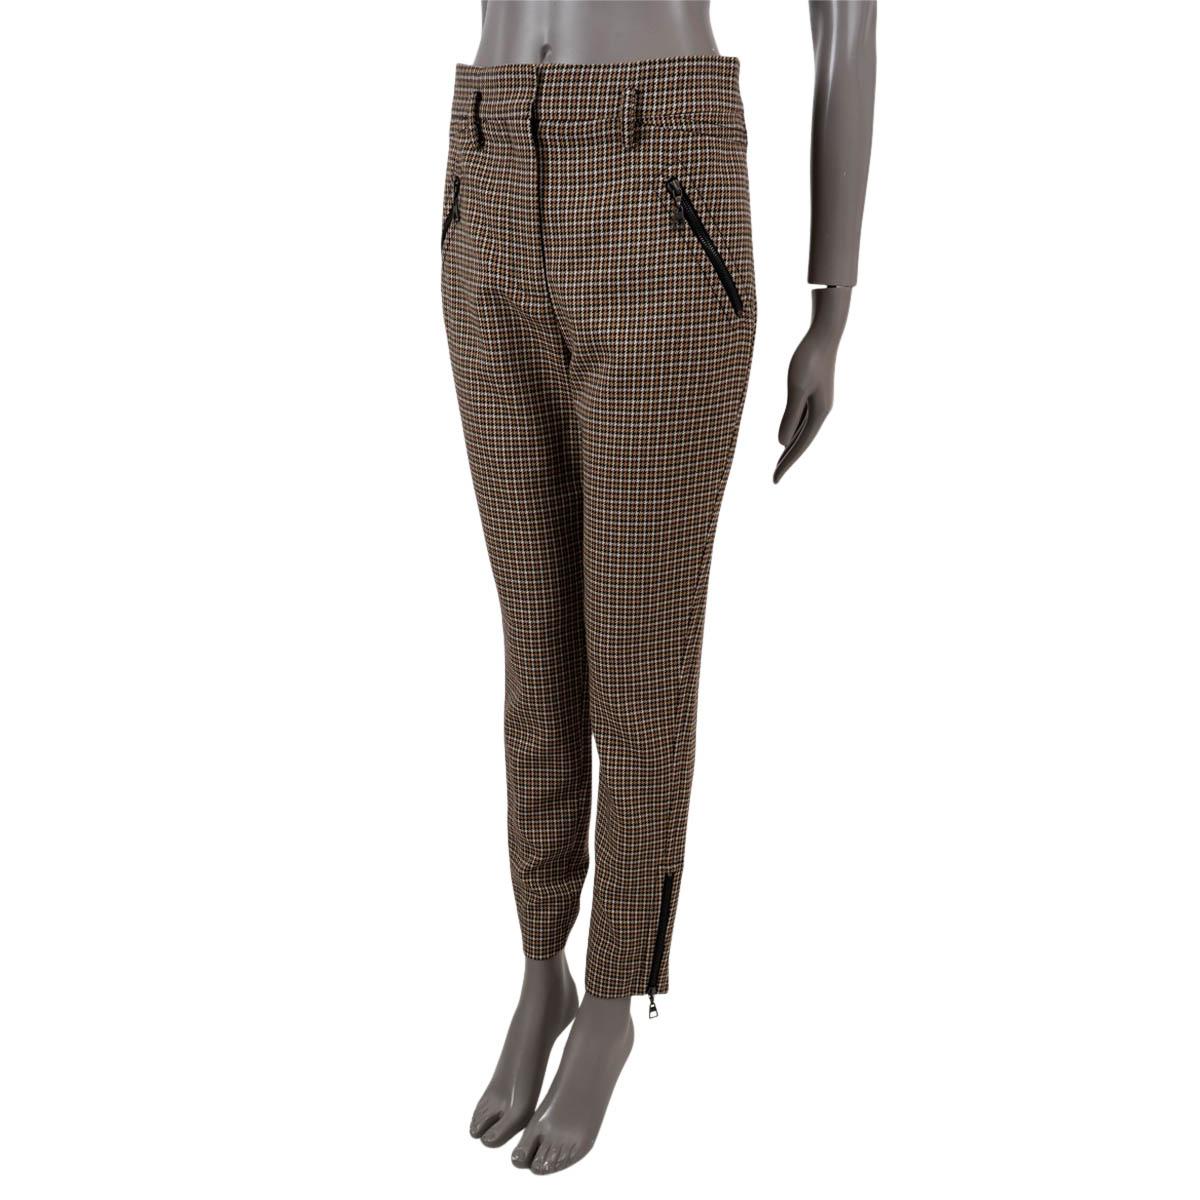 100% authentische Louis Vuitton Hose mit Hahnentrittmuster aus beiger, cremefarbener, schwarzer und schokoladenbrauner Wolle (100%). Sie hat ein tailliertes Bein mit Reißverschlüssen an den Bündchen, zwei Reißverschlusstaschen auf der Vorderseite